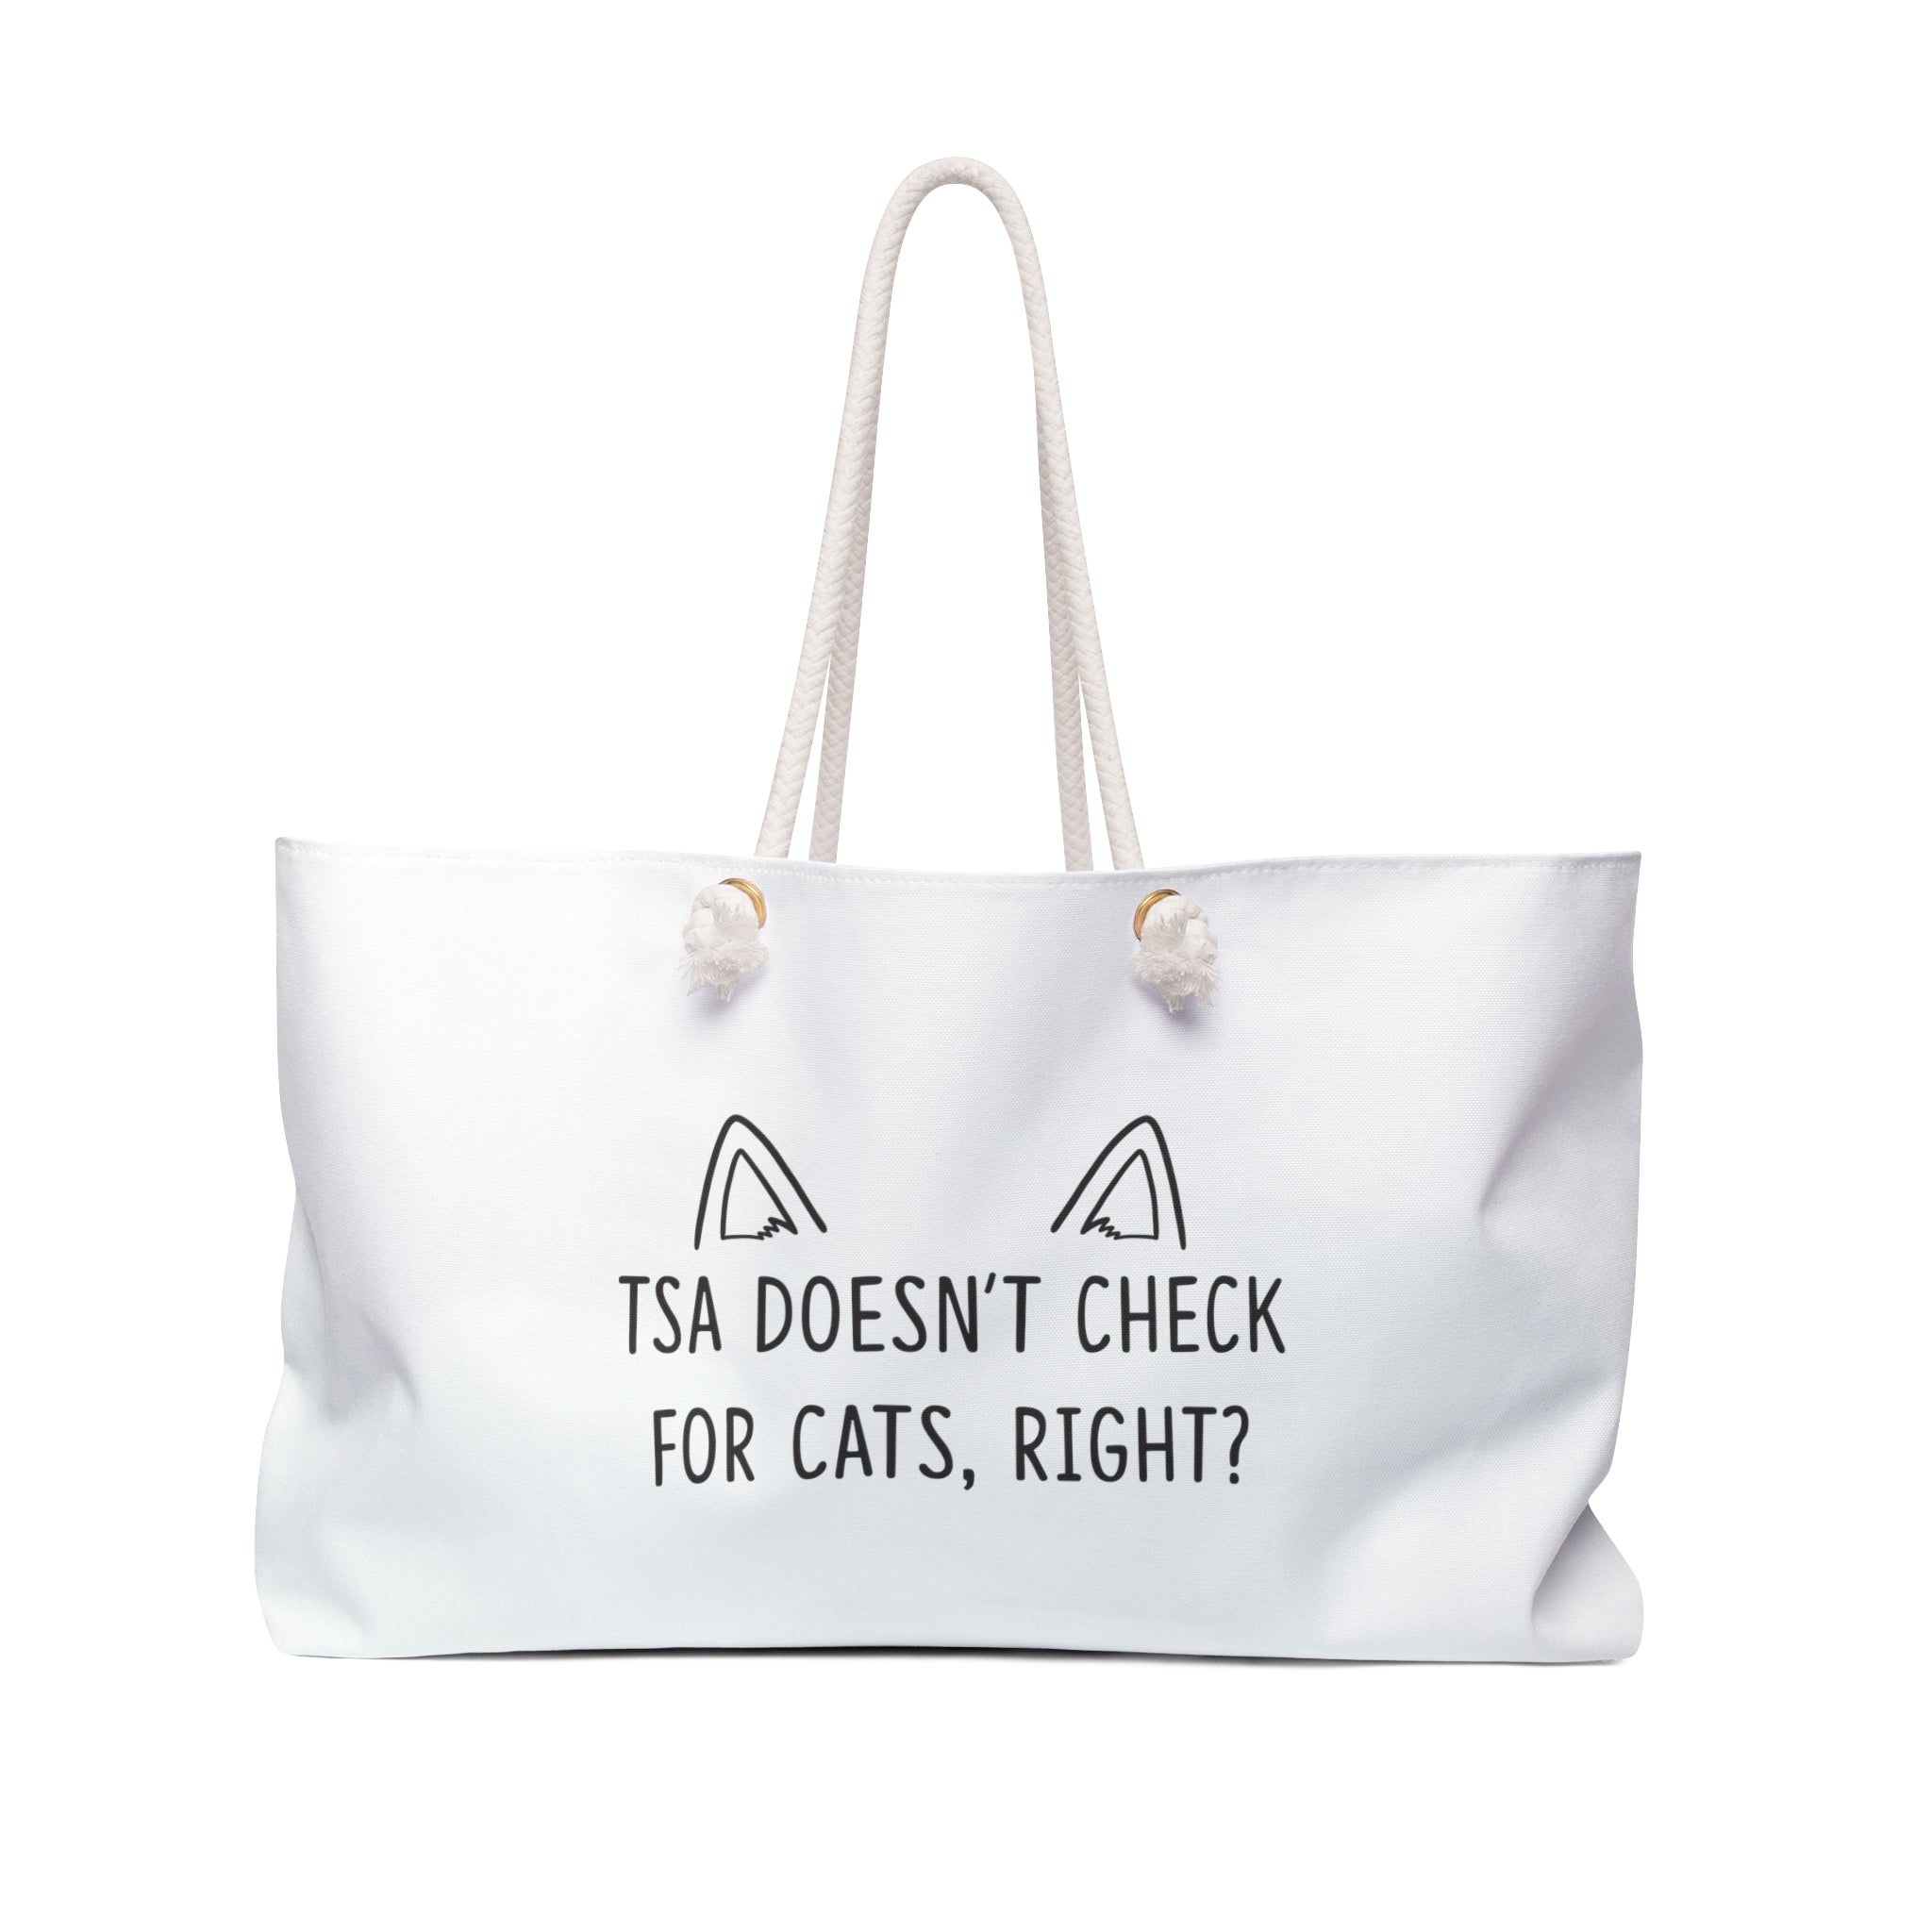 cat weekender bag